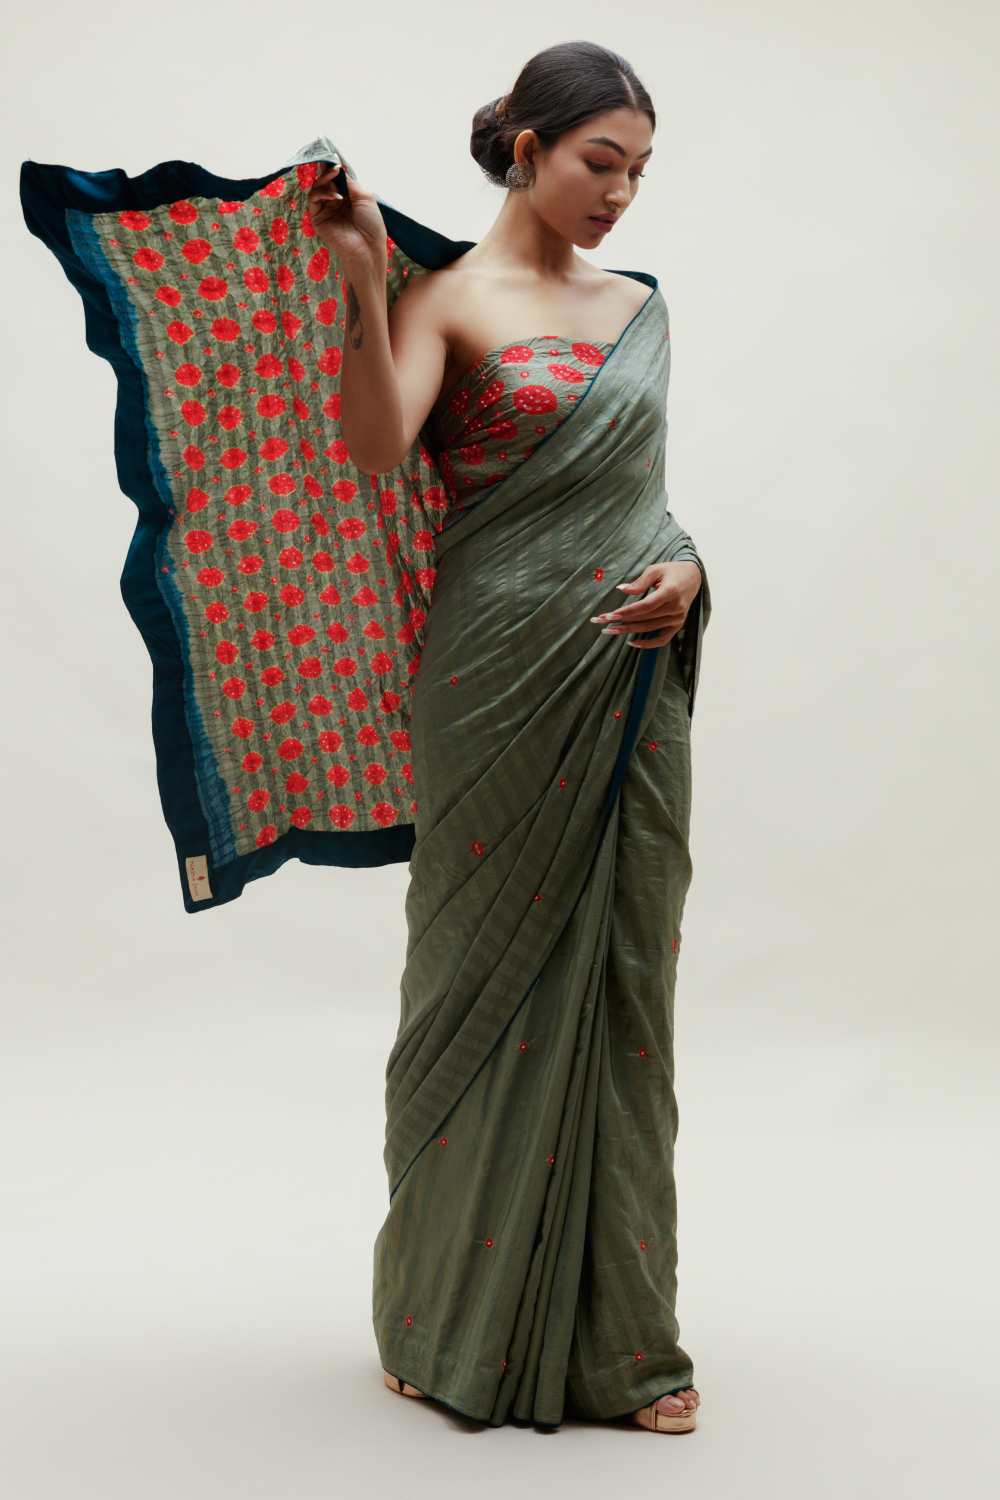 Bandhani Veda Saree - Greyish Green and Red